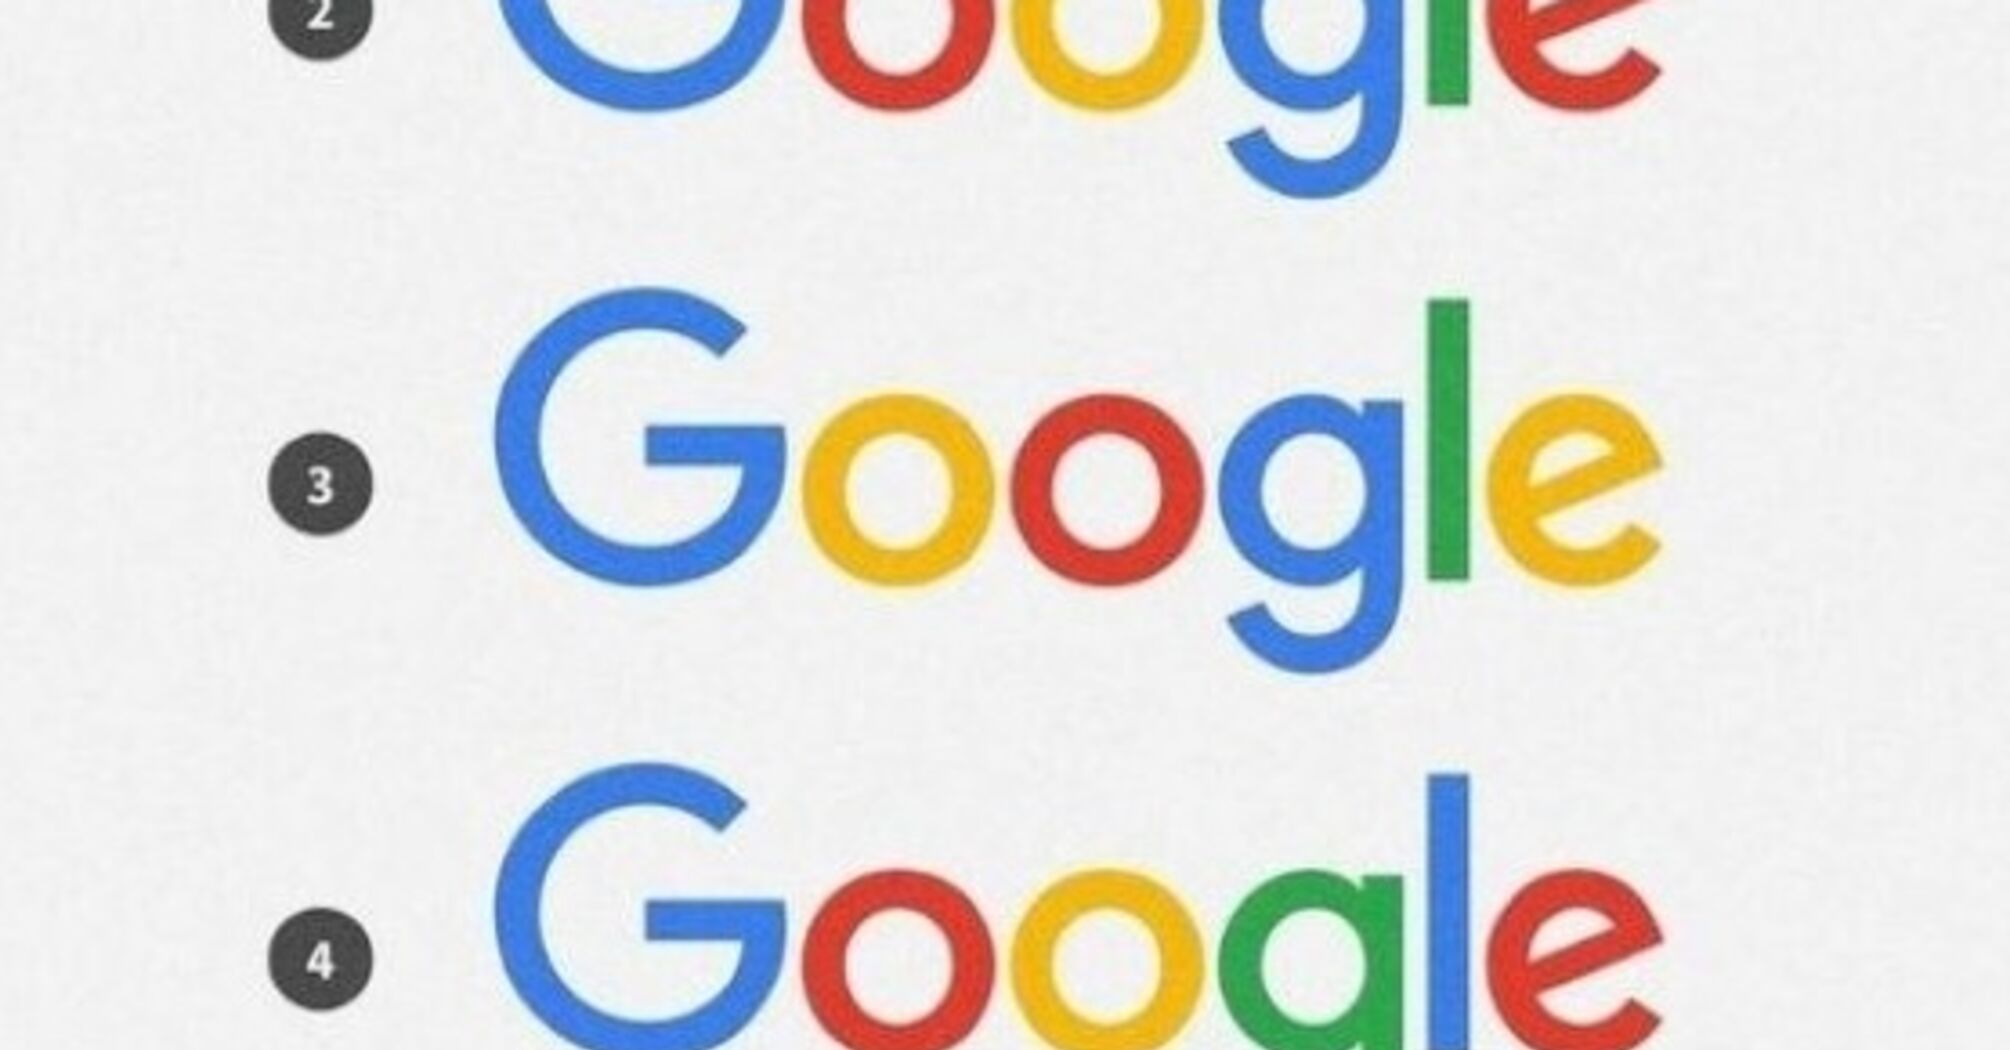 Тест на IQ и внимательность: найдите правильный логотип Google